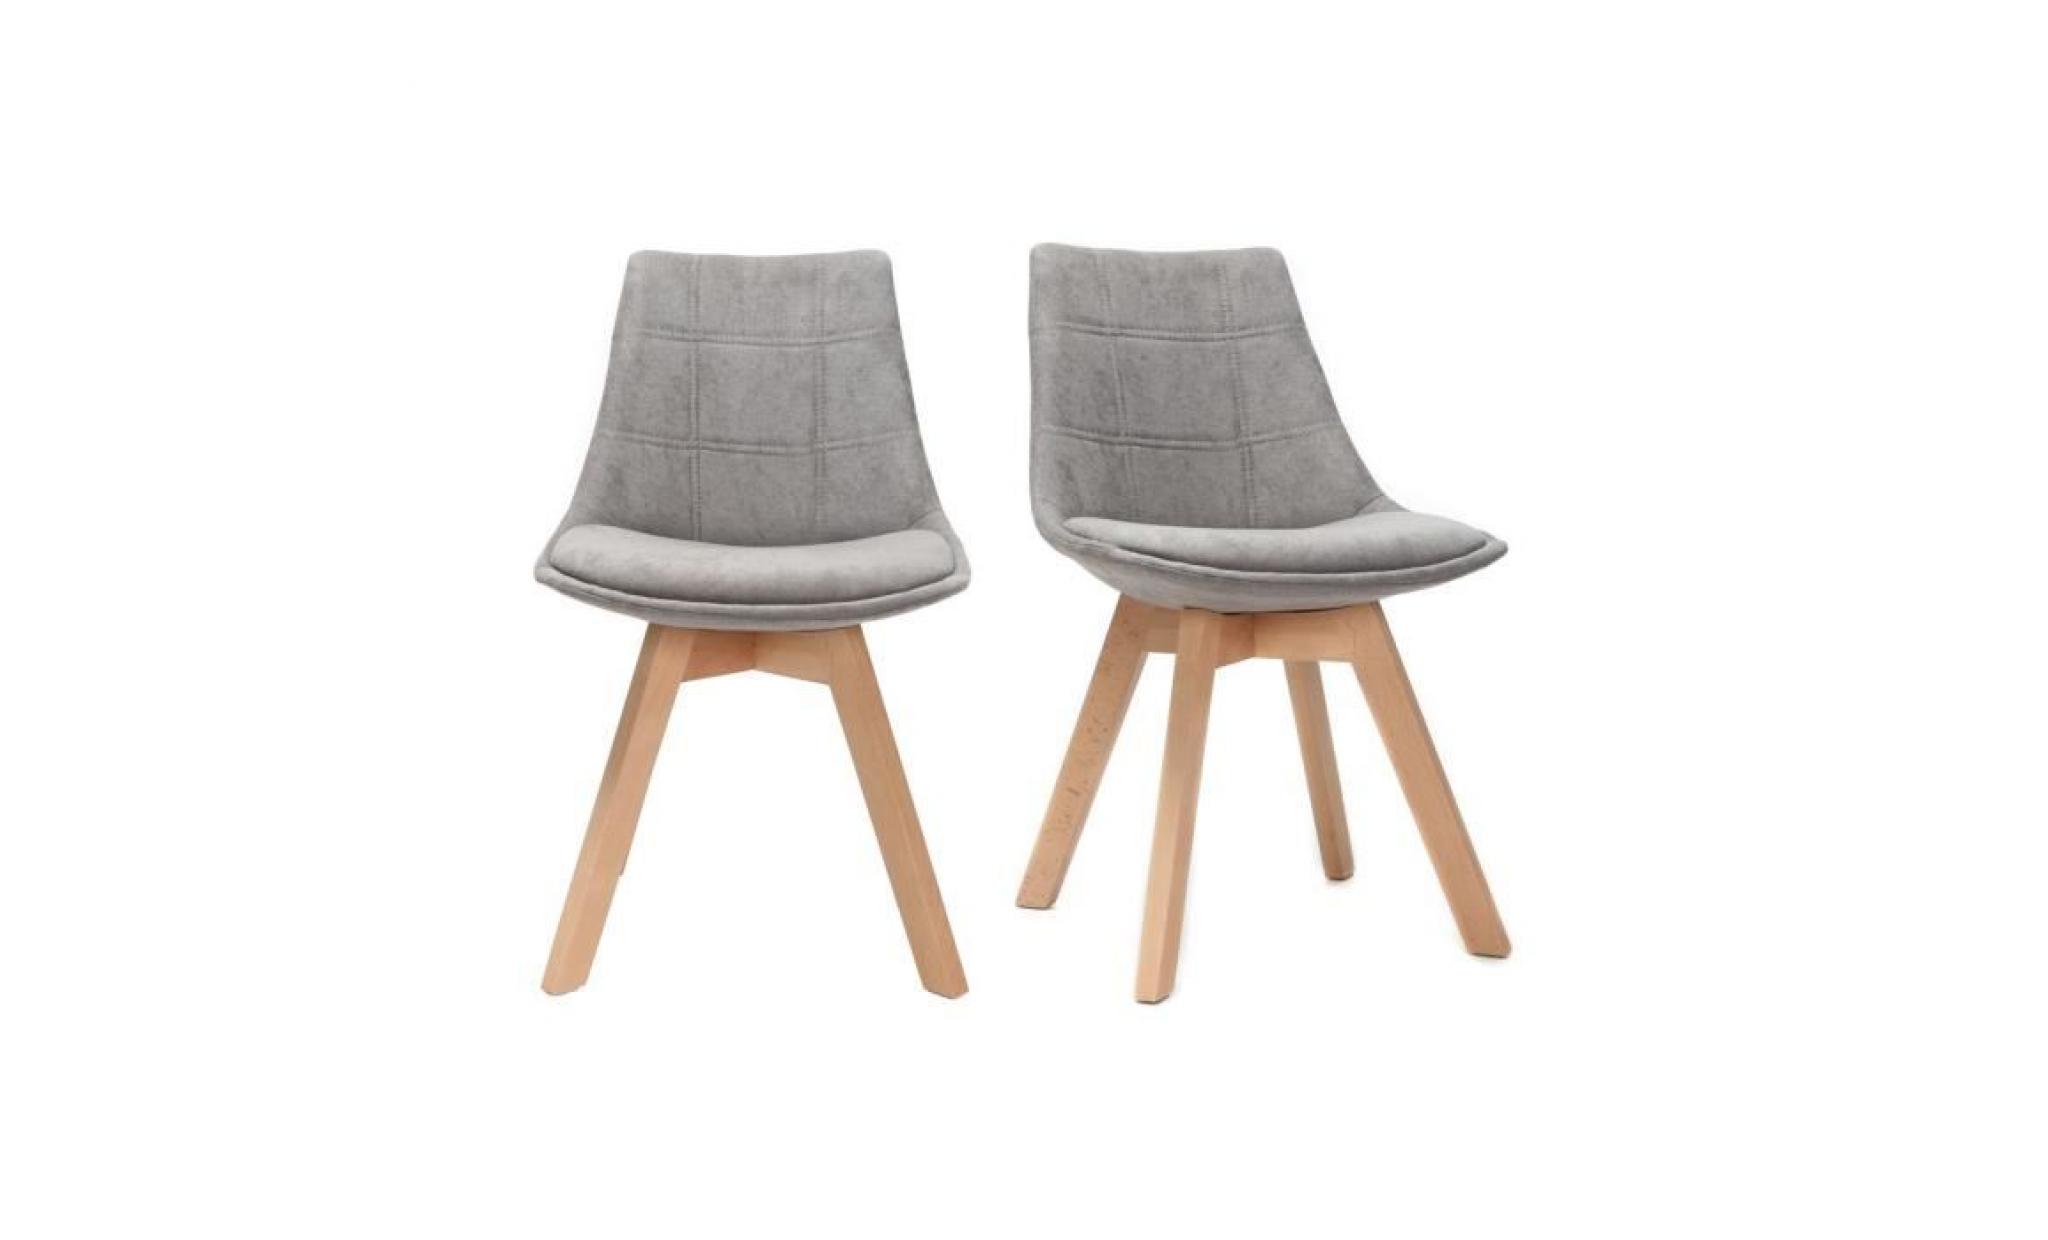 miliboo   lot de 2 chaises design scandinave bois et tissu gris foncé matilde